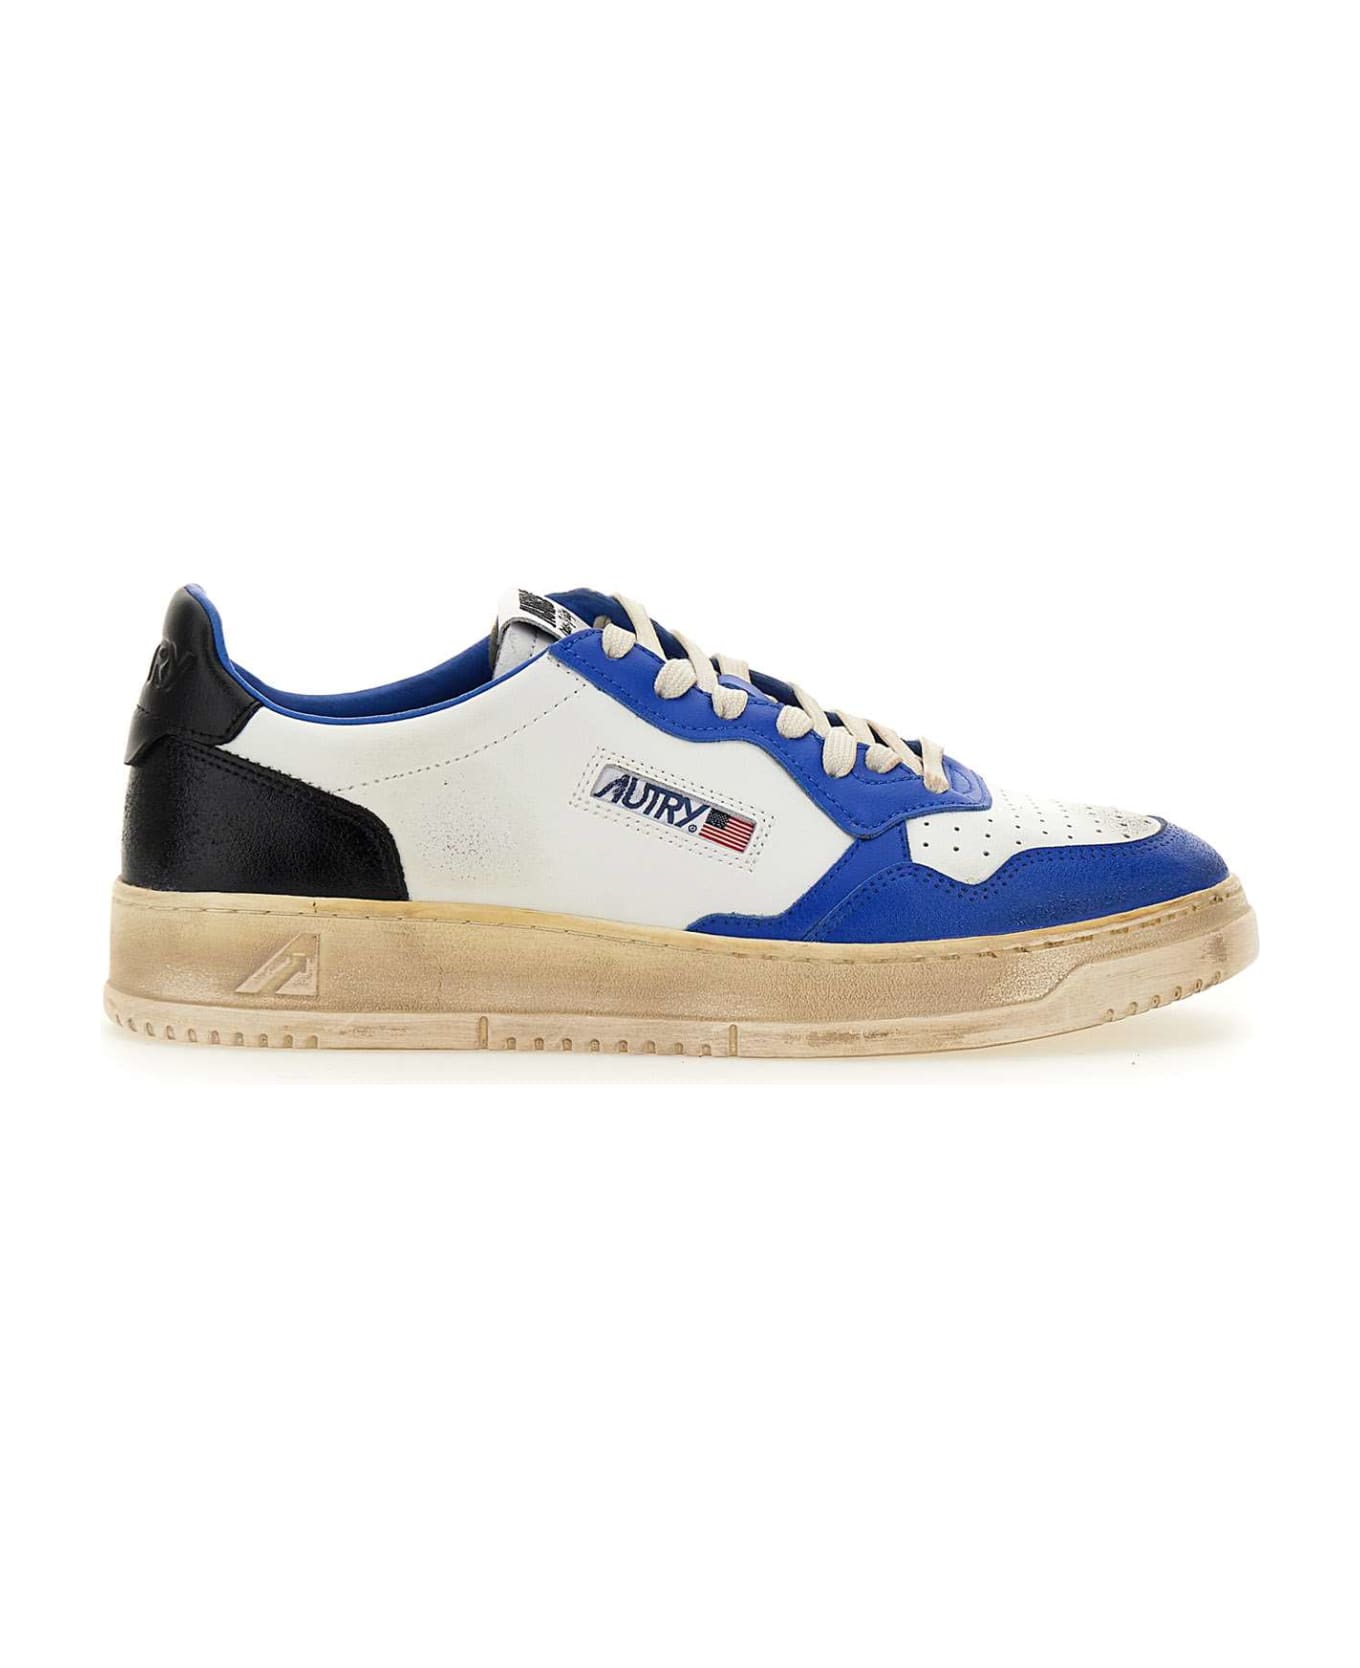 Autry "avlm Sv10" Sneakers - White-blue-black